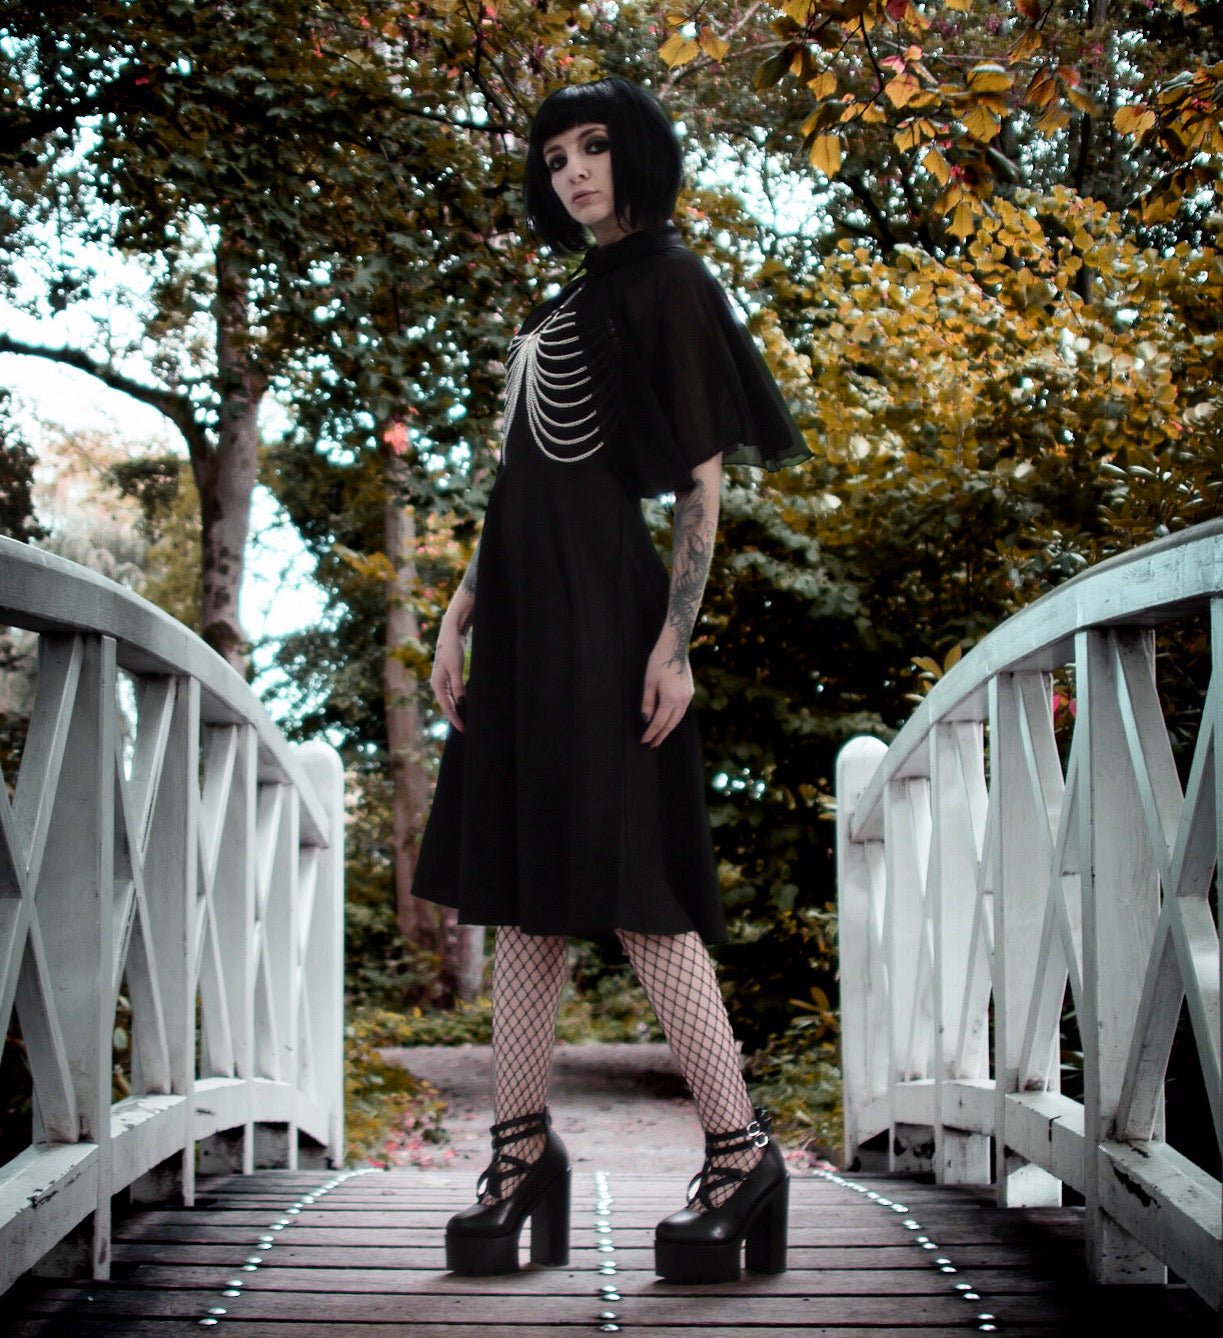 The Black Widow Dress - Goth Mall